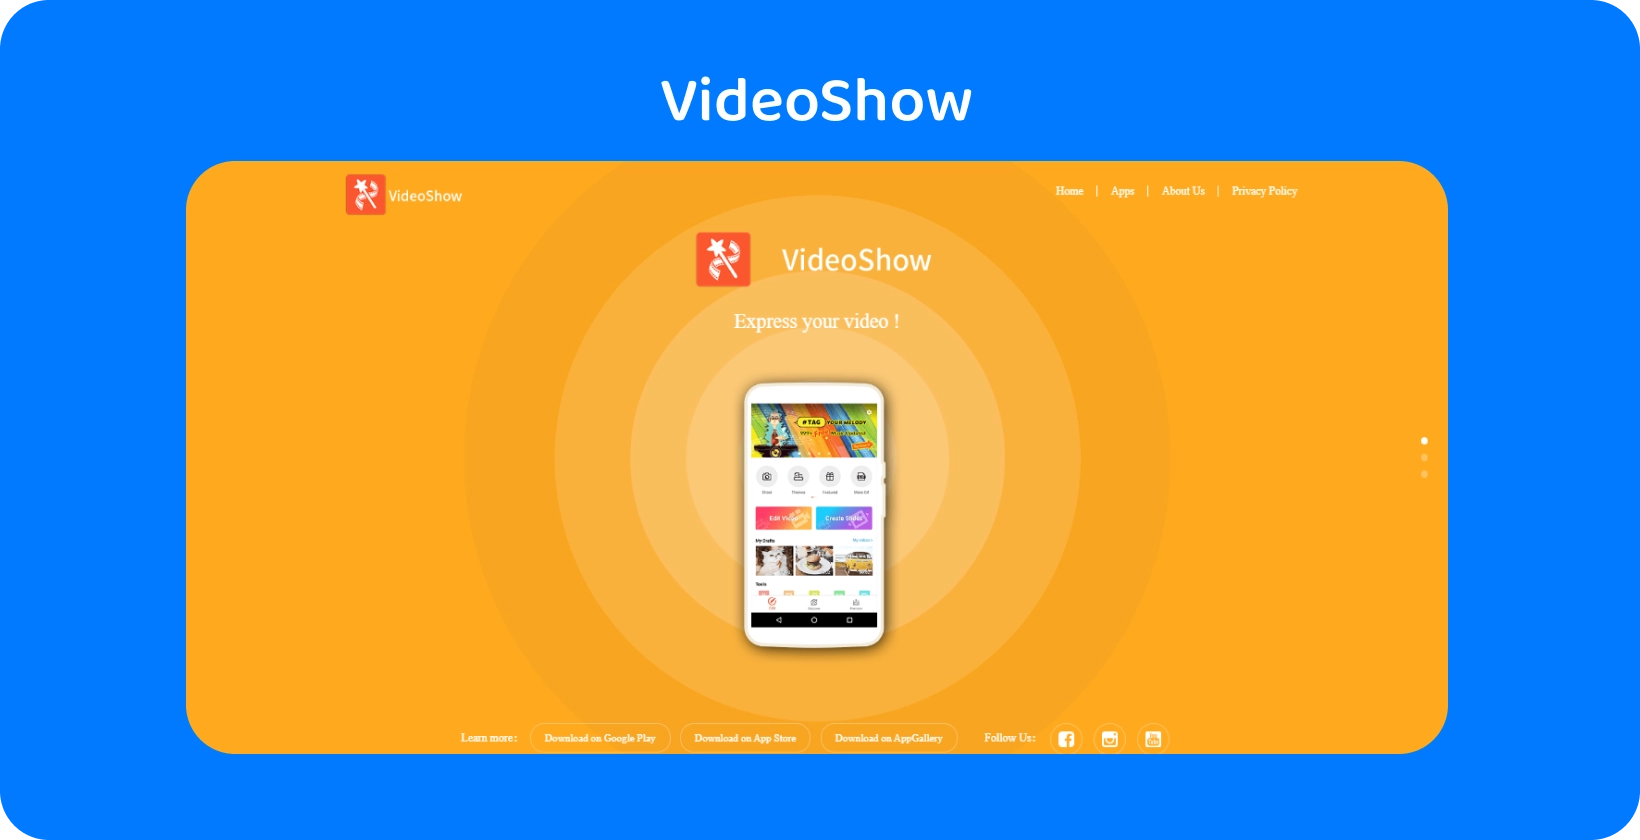 VideoShow alkalmazás felülete a képernyőn, amely egyszerű videószerkesztő eszközöket és funkciókat kínál élénk narancssárga háttéren.